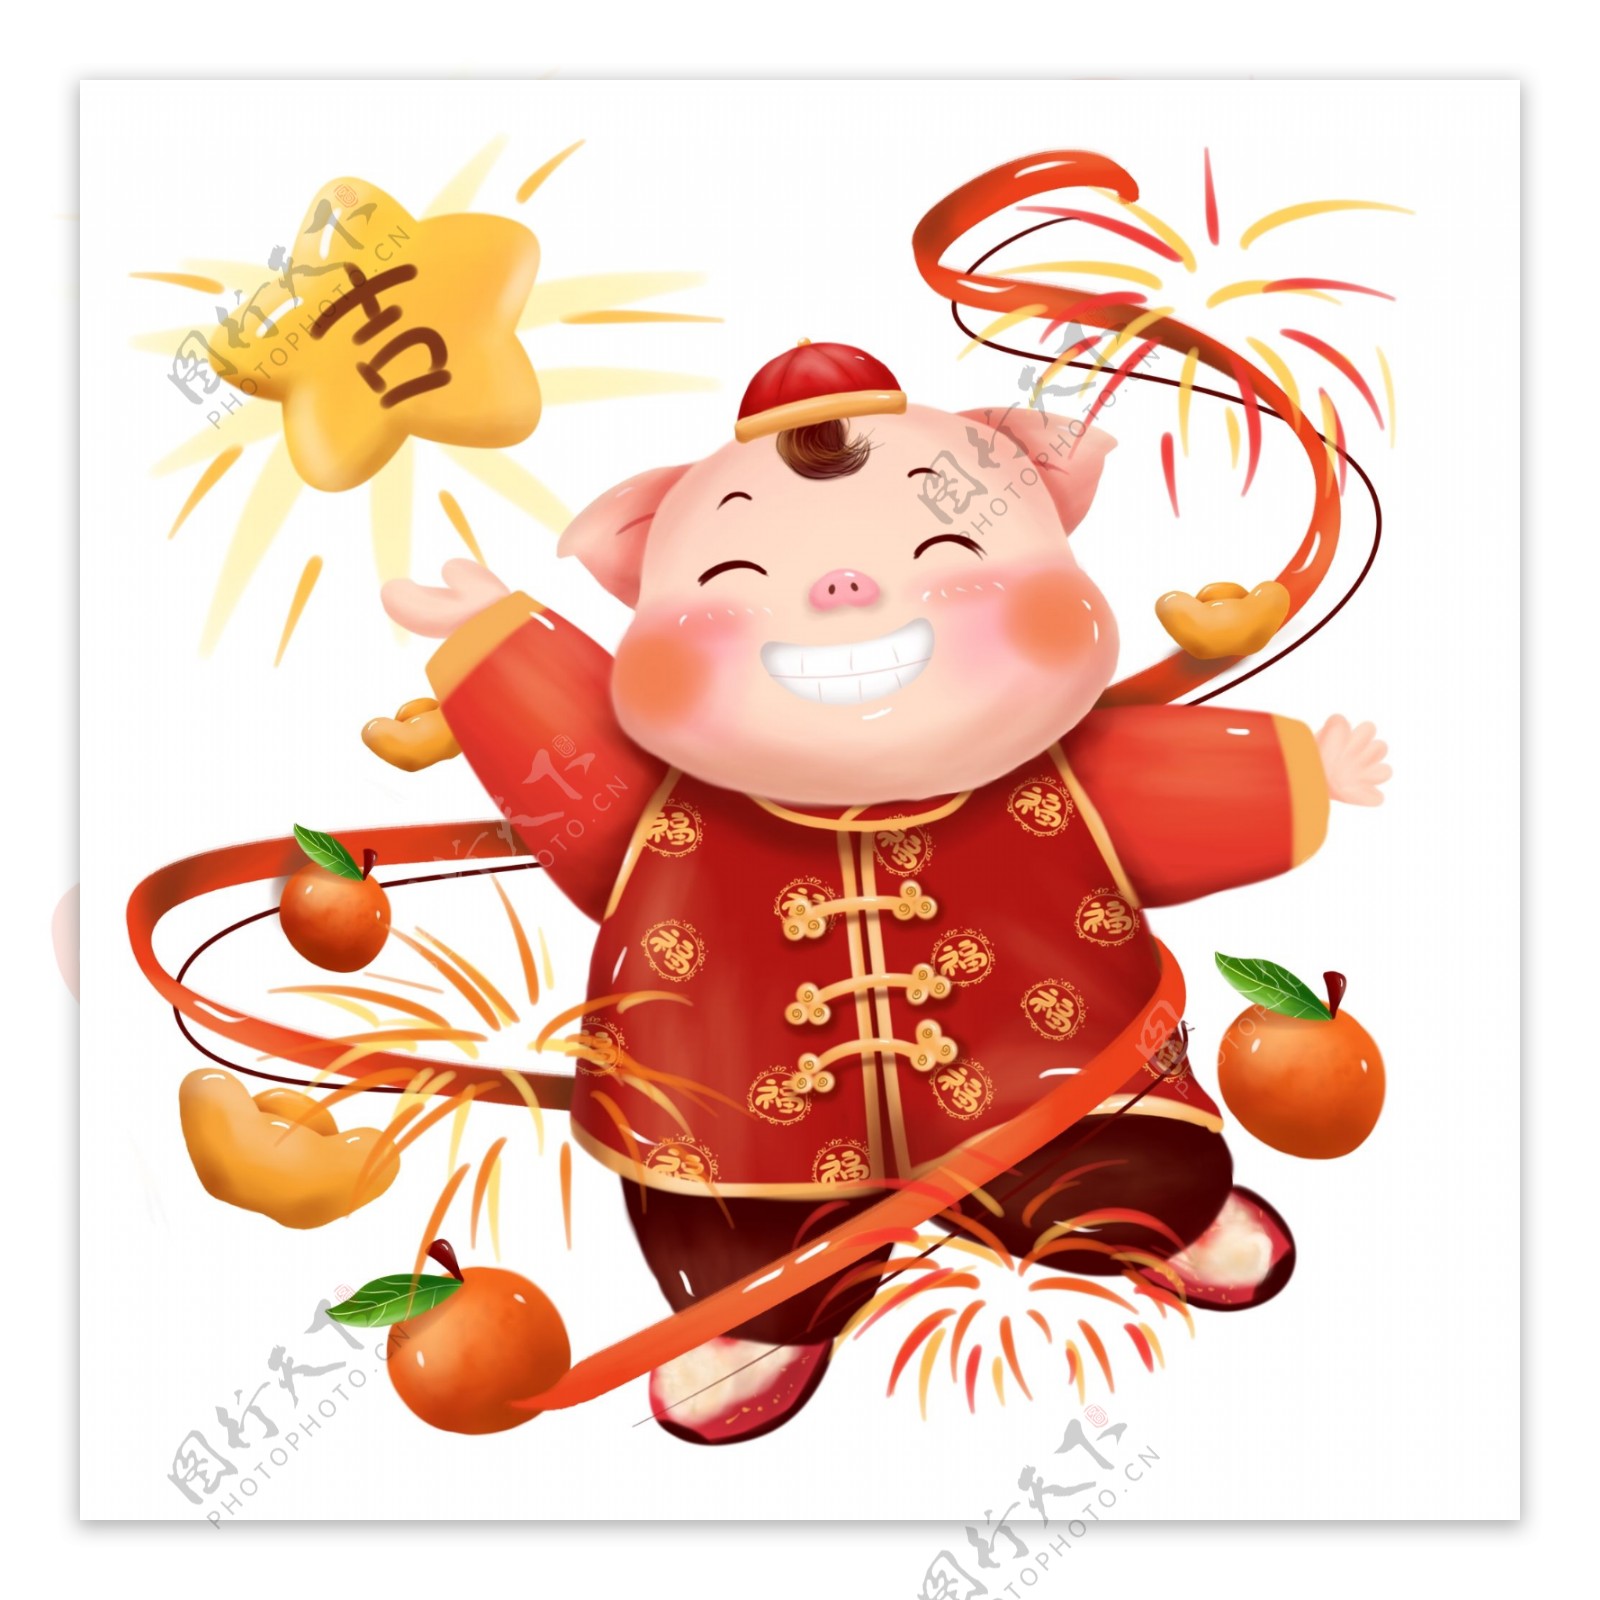 猪年红色喜庆吉星高照贺岁新春动物形象插画